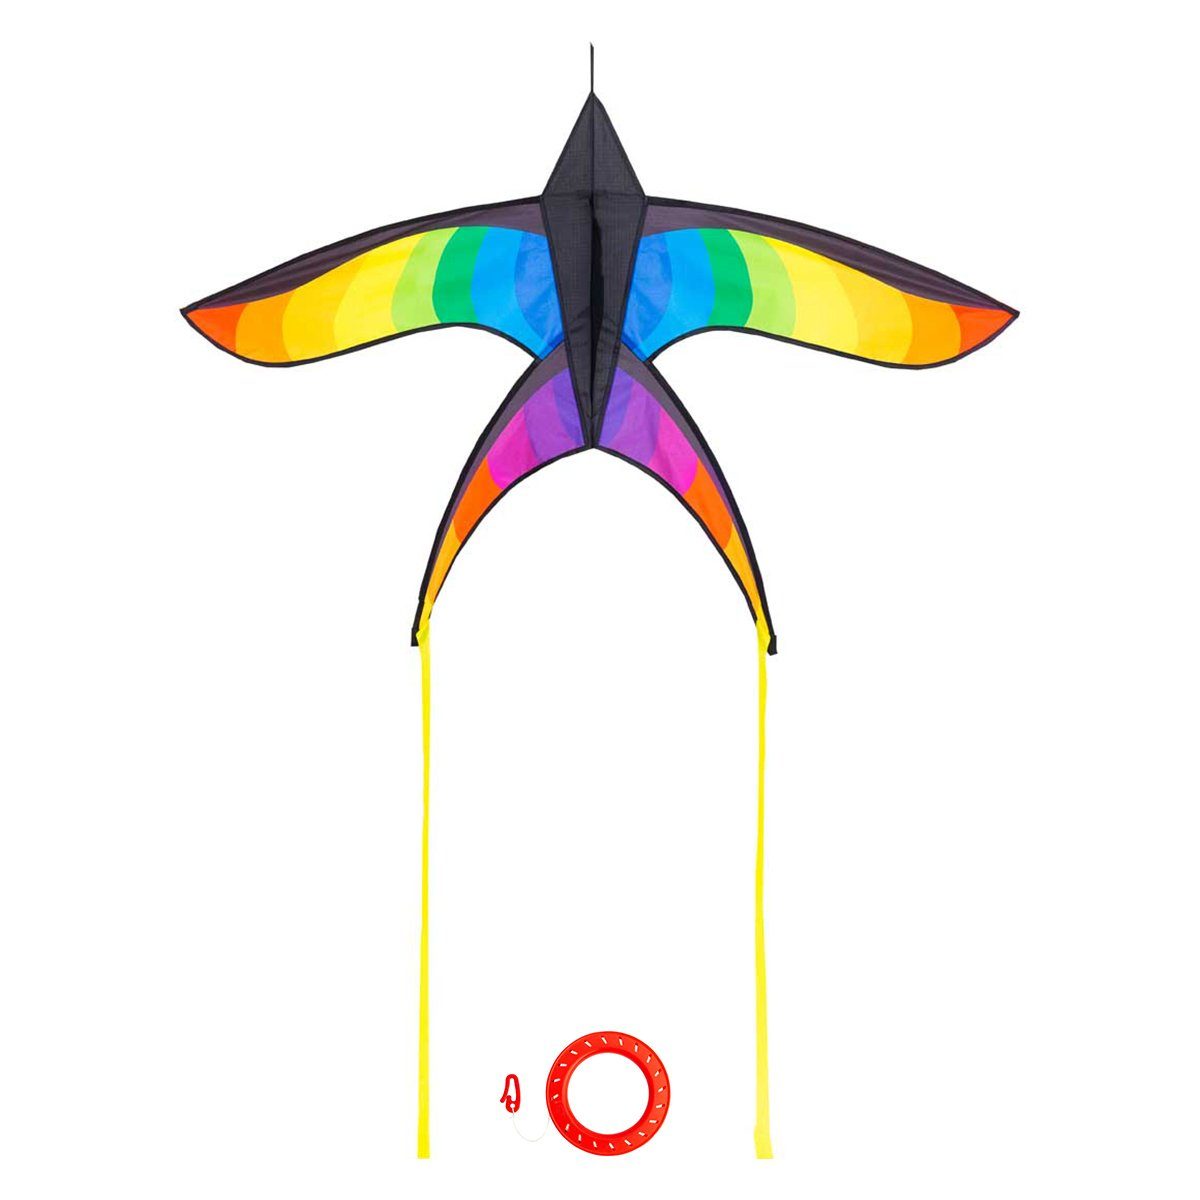 HQ Flug-Drache Kinderdrachen Einleiner Drachen HQ Swallow Kite Rainbow Flugdrachen, Kinderdrachen ab 8 Jahren